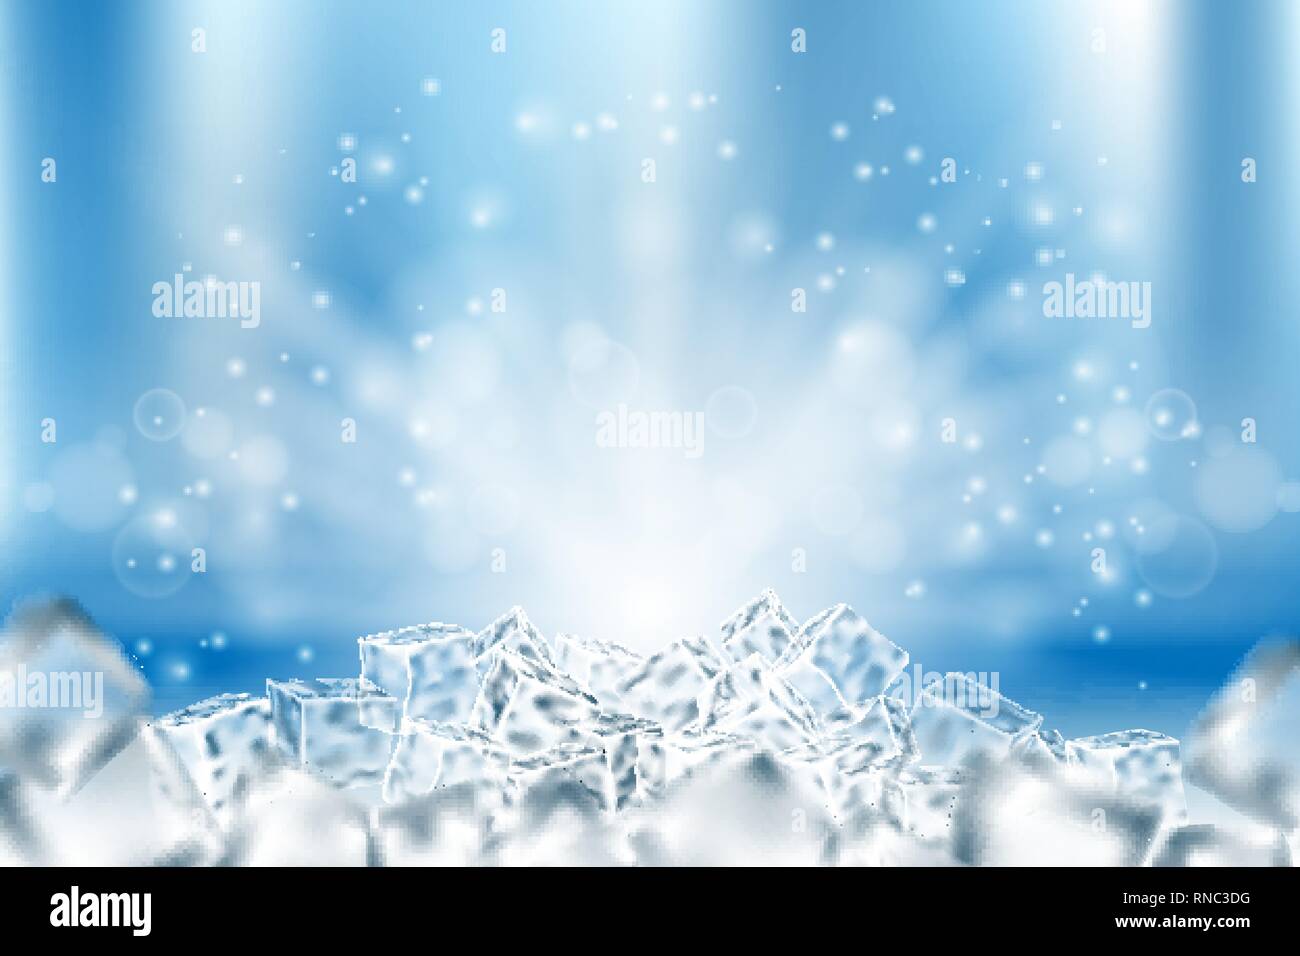 Abstract eis Würfel Hintergrund. Abstract Eis und Schnee in Hellblau Poster Design, 3 Abbildung d Stock Vektor